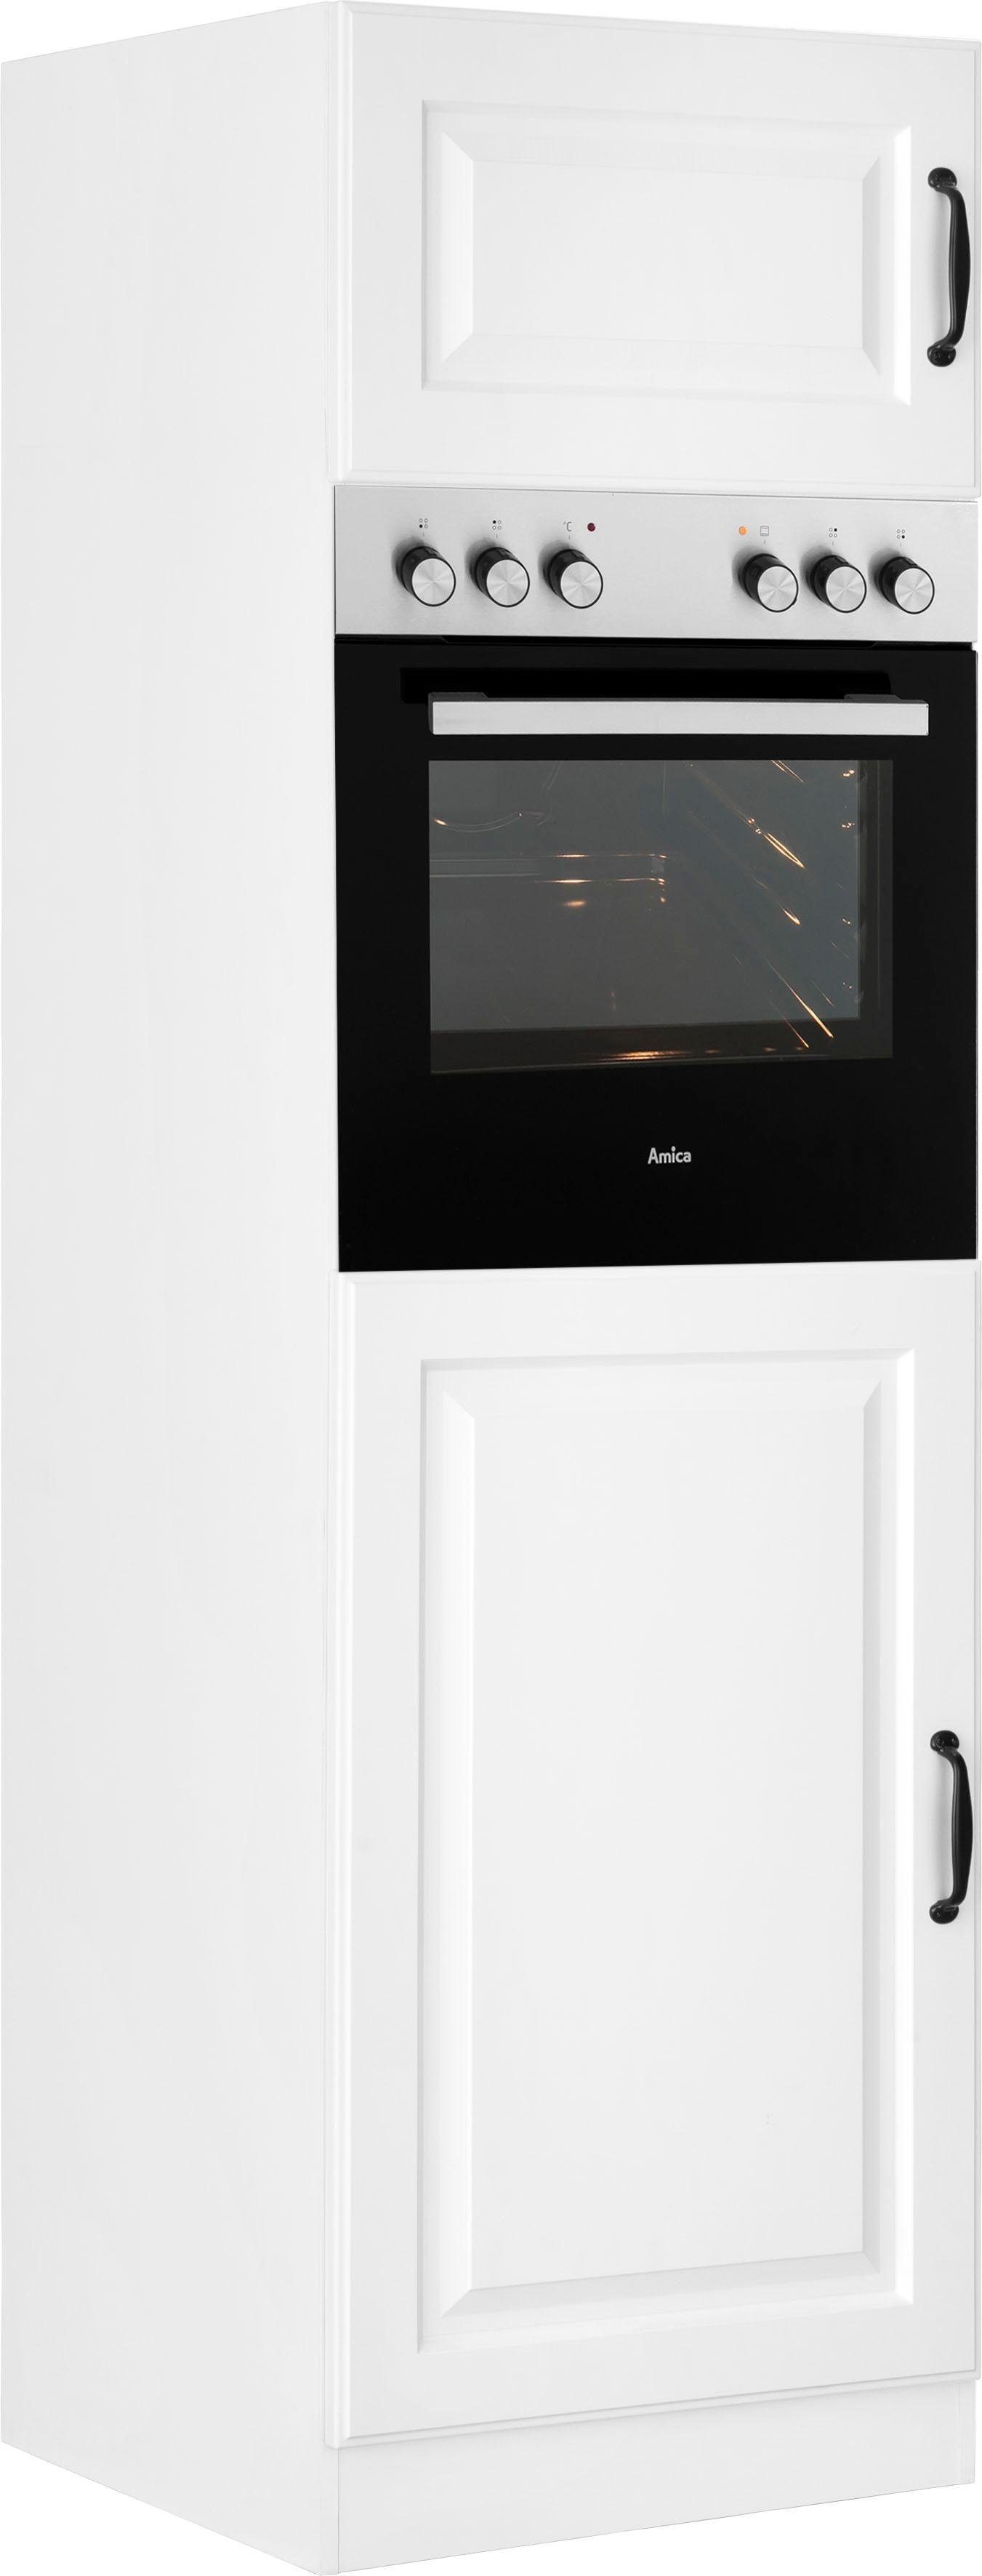 wiho Küchen Backofen/Kühlumbauschrank Erla 60 cm breit mit Kassettenfront weiß/weiß | weiß